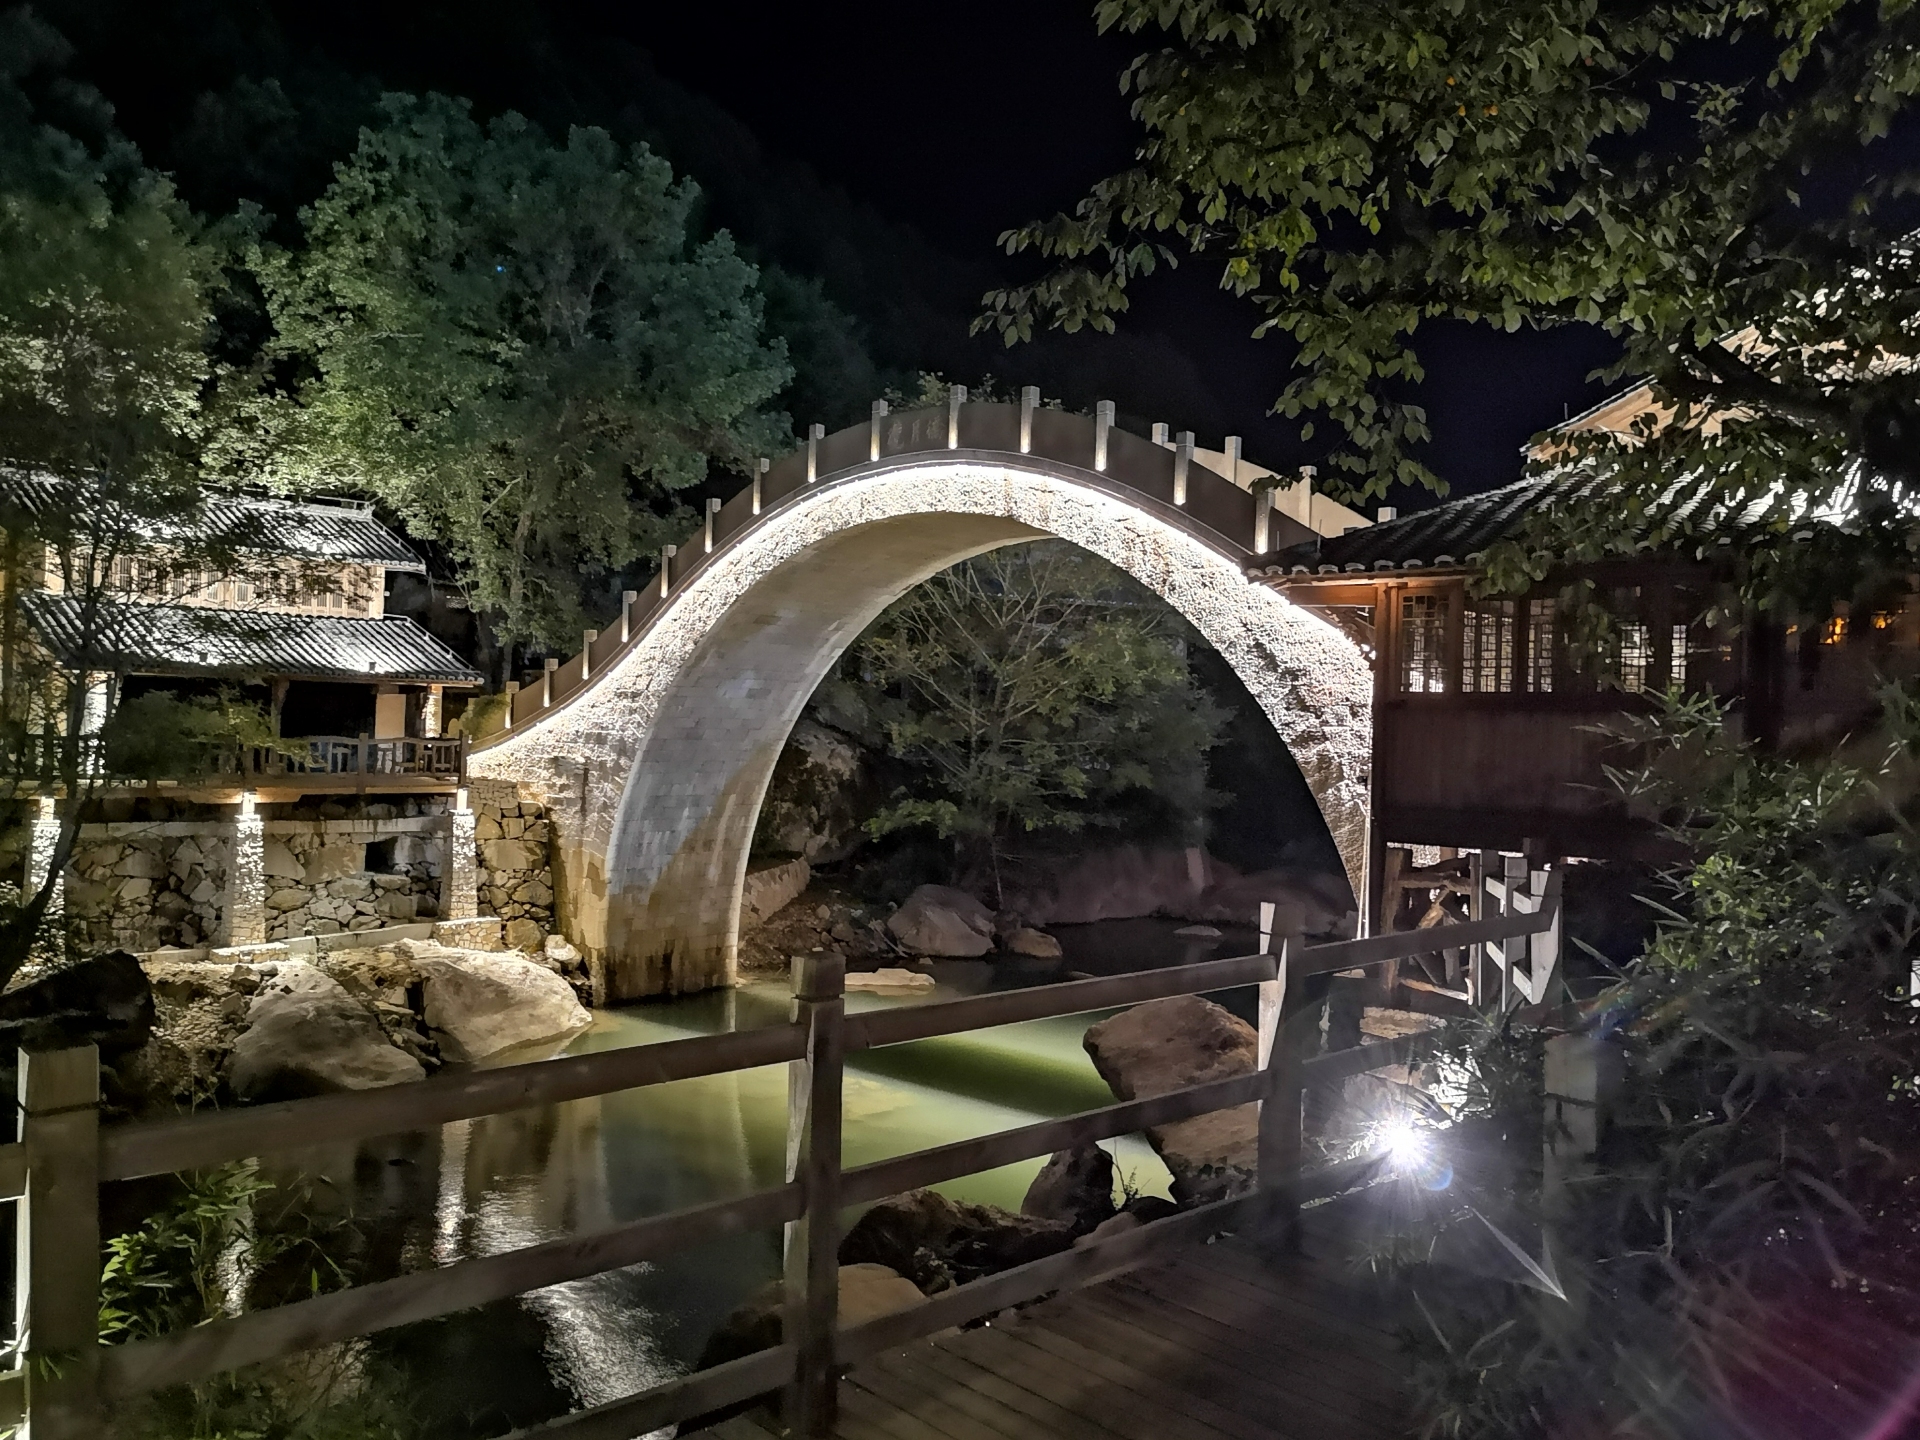 醴陵青云桥夜景图片